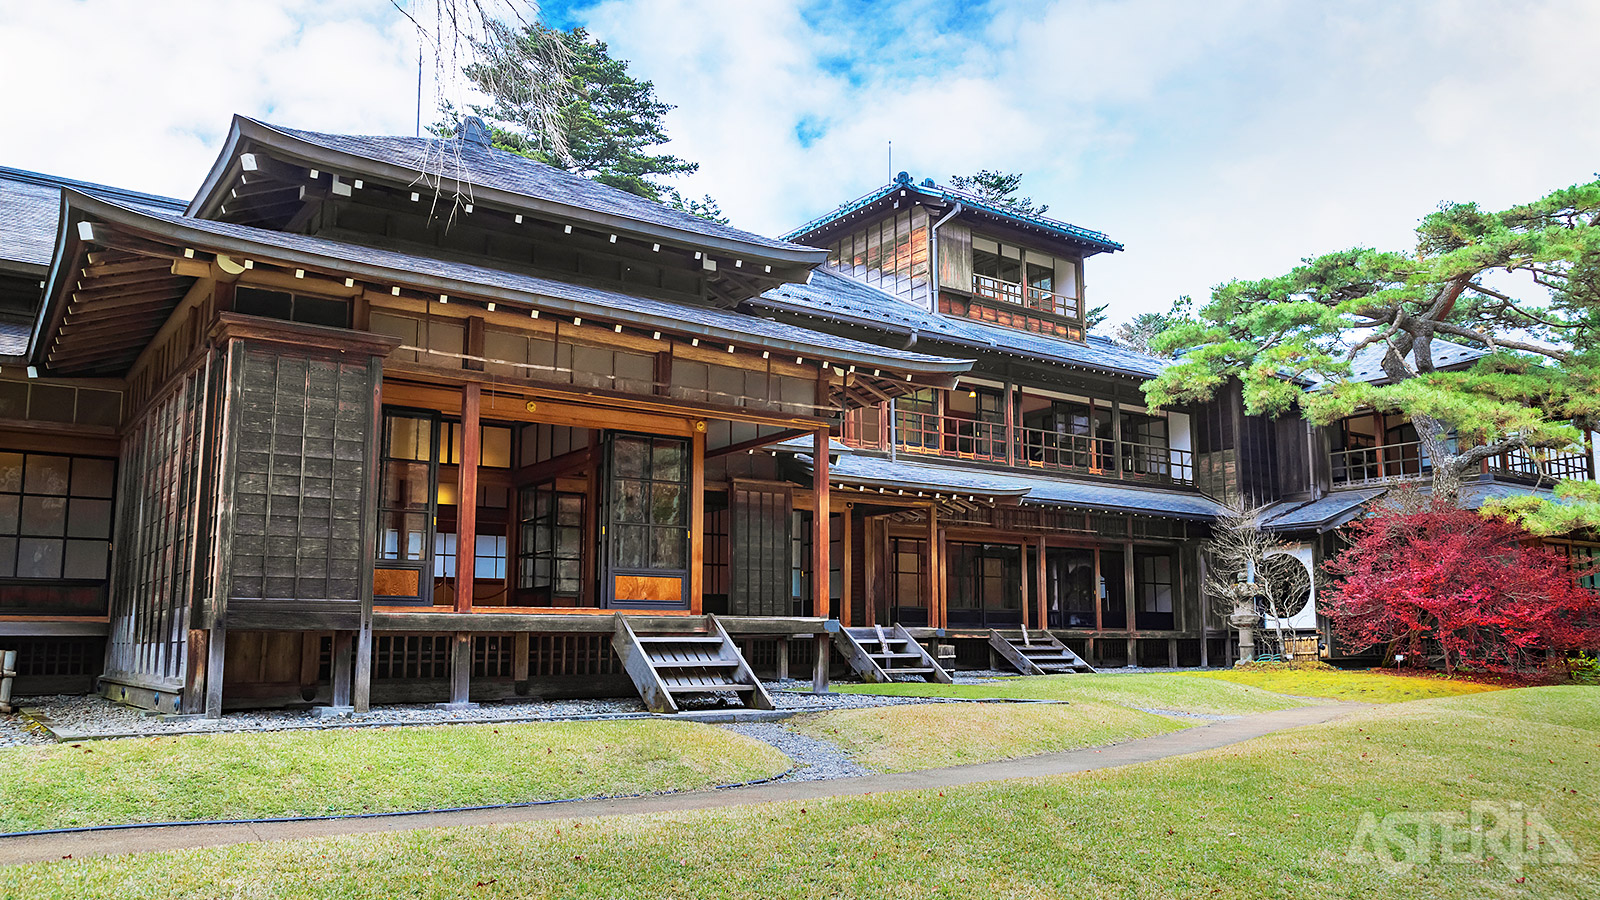 Anders dan de prachtige tempels, toont de Tomazawa Villa goed het verlangen naar ruimte in het drukbevolkte Japan